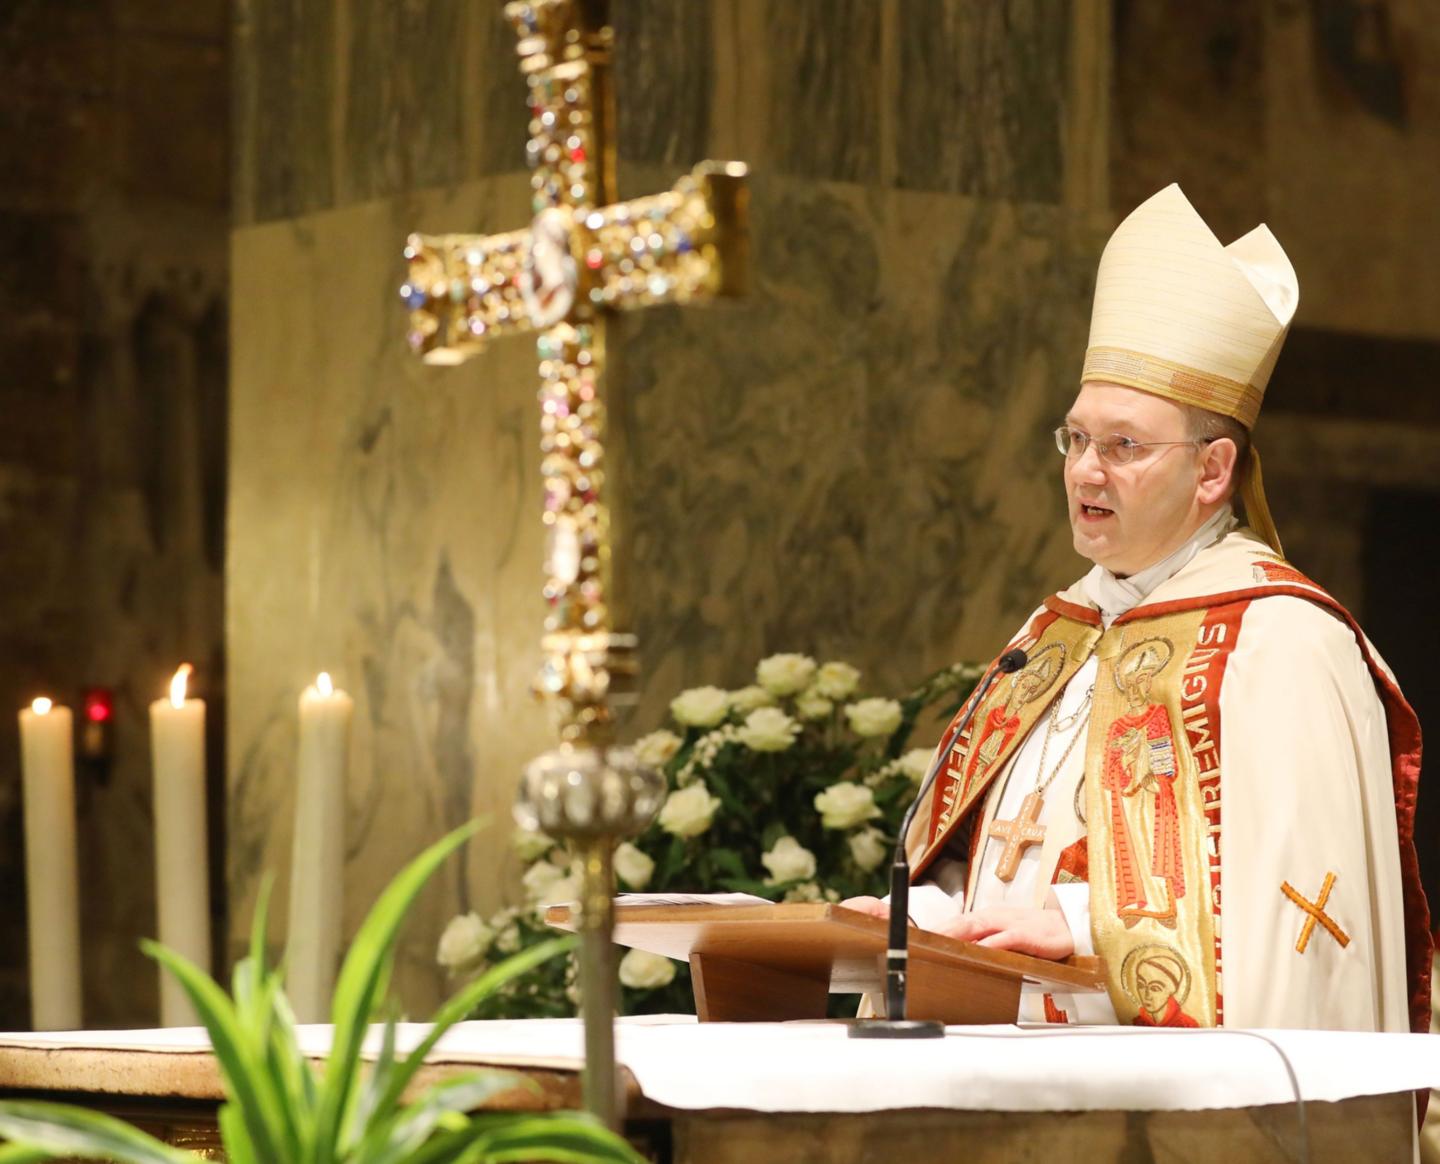 Bischof Dr. Helmut Dieser bei der Jahresschlussandacht 2019 (c) Bistum Aachen / Andreas Steindl